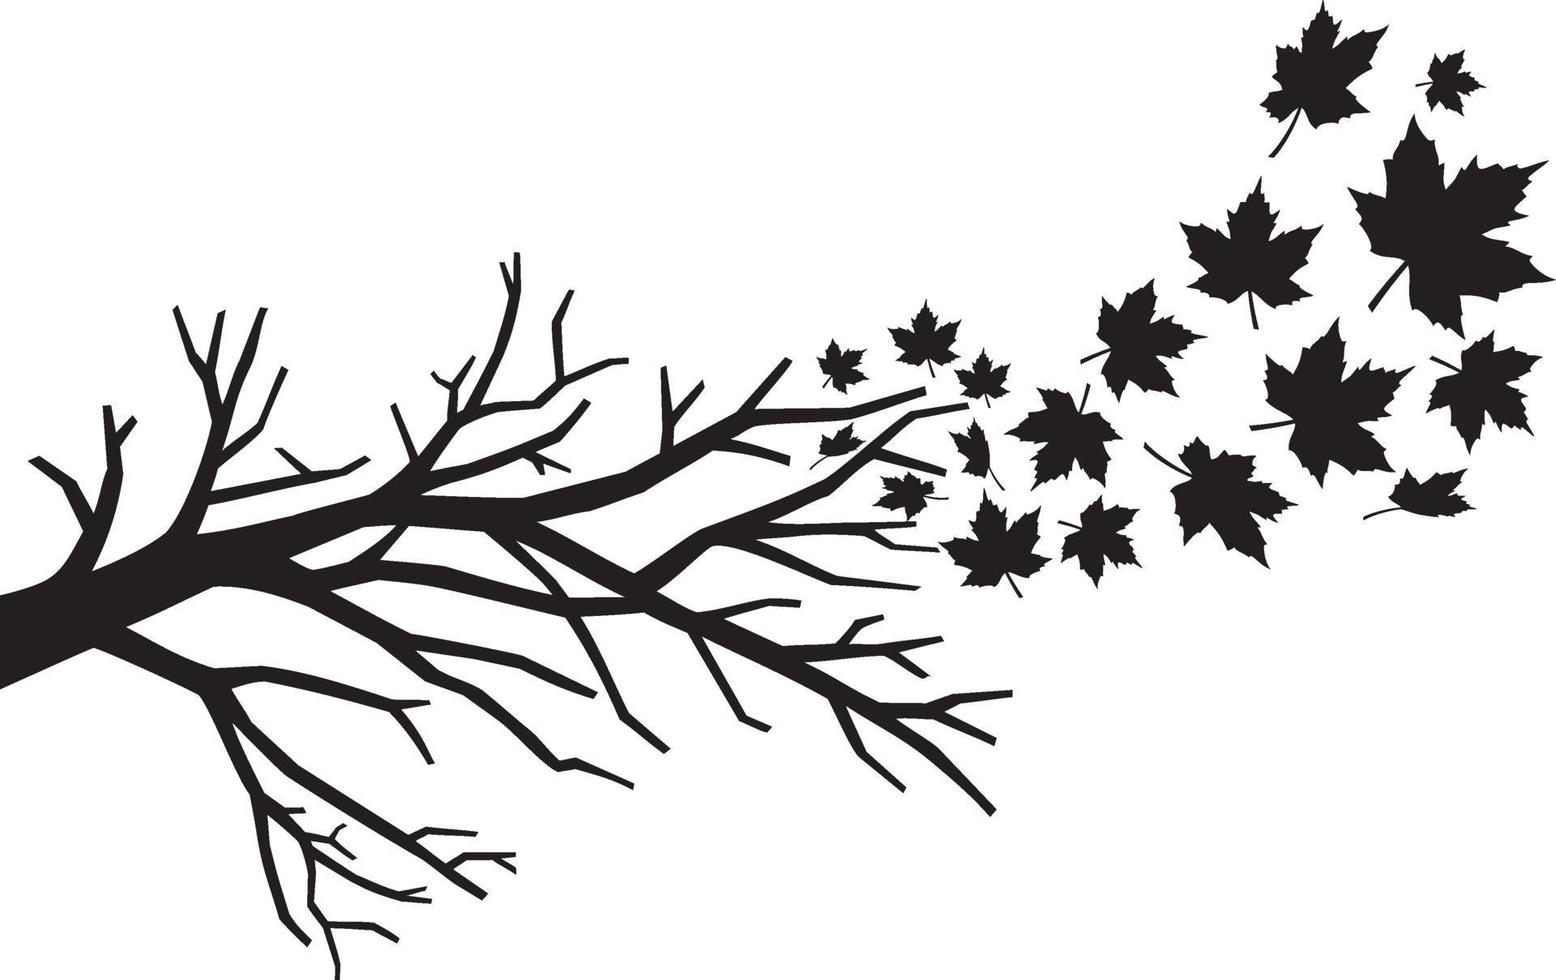 Zweig mit fallenden Blättern vektor